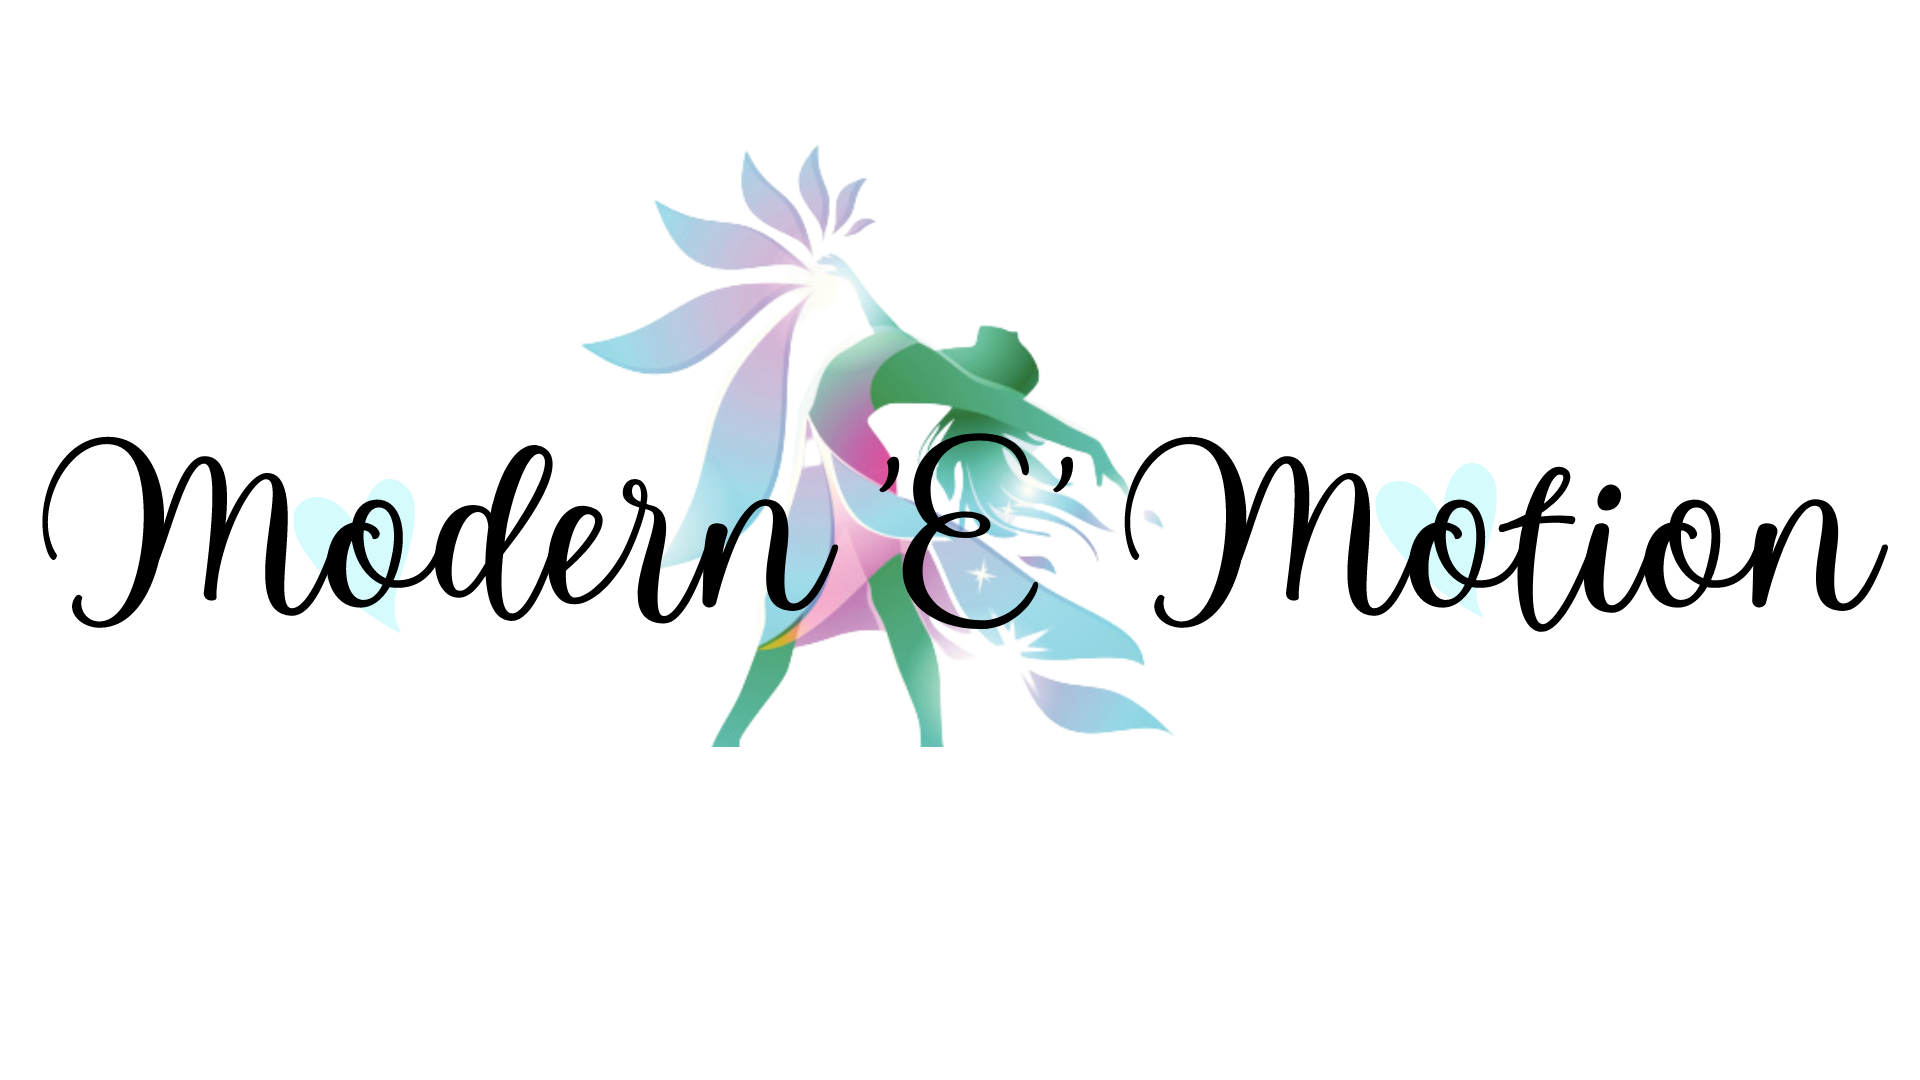 Modern 'E' Motion